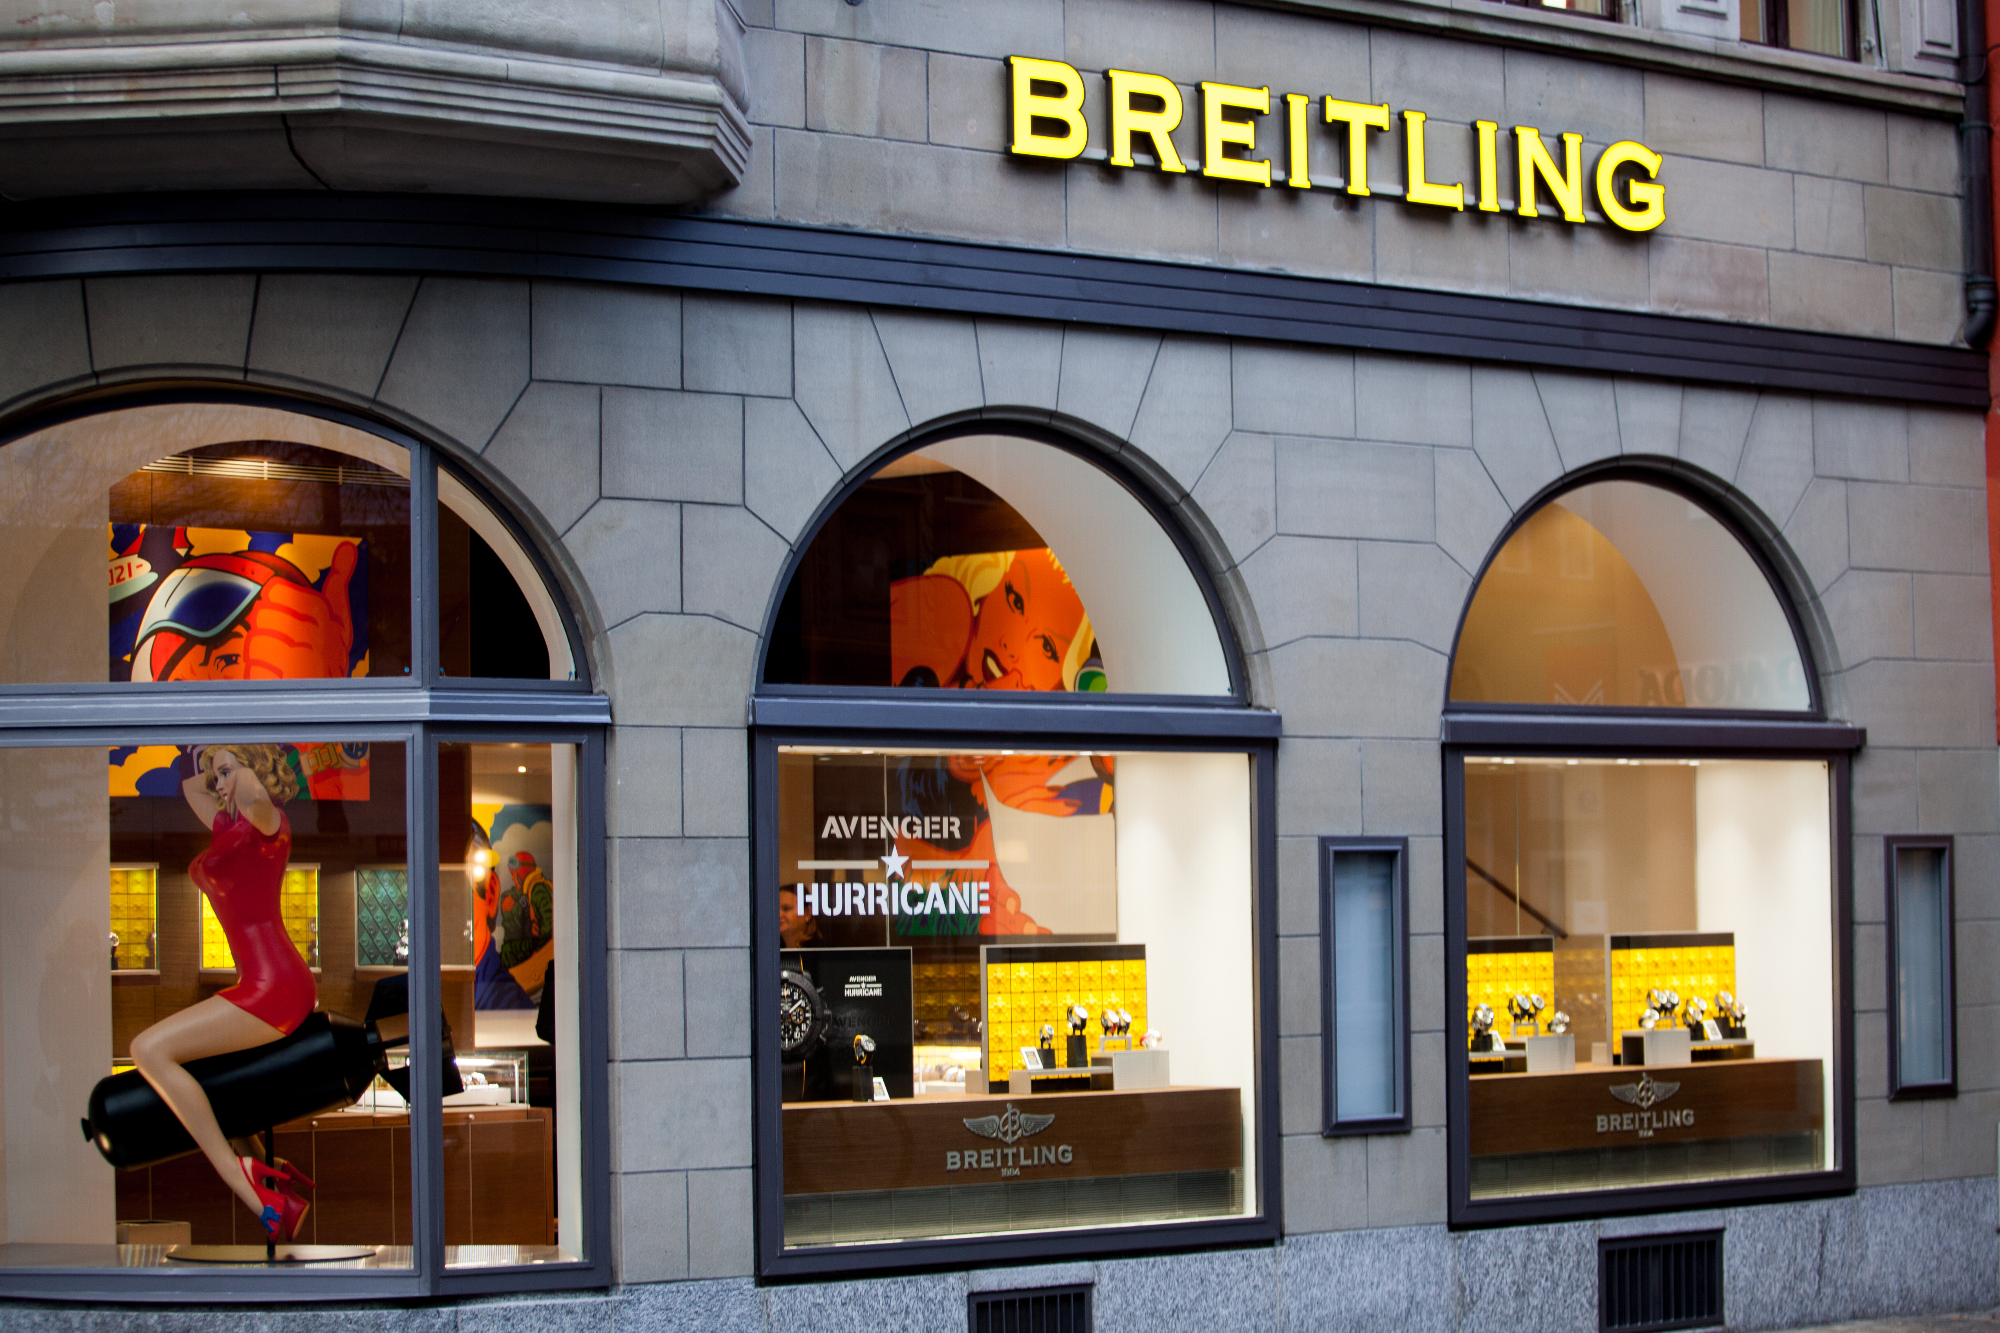 Mislim, da je Breitling ura lahko tudi dober sinonim